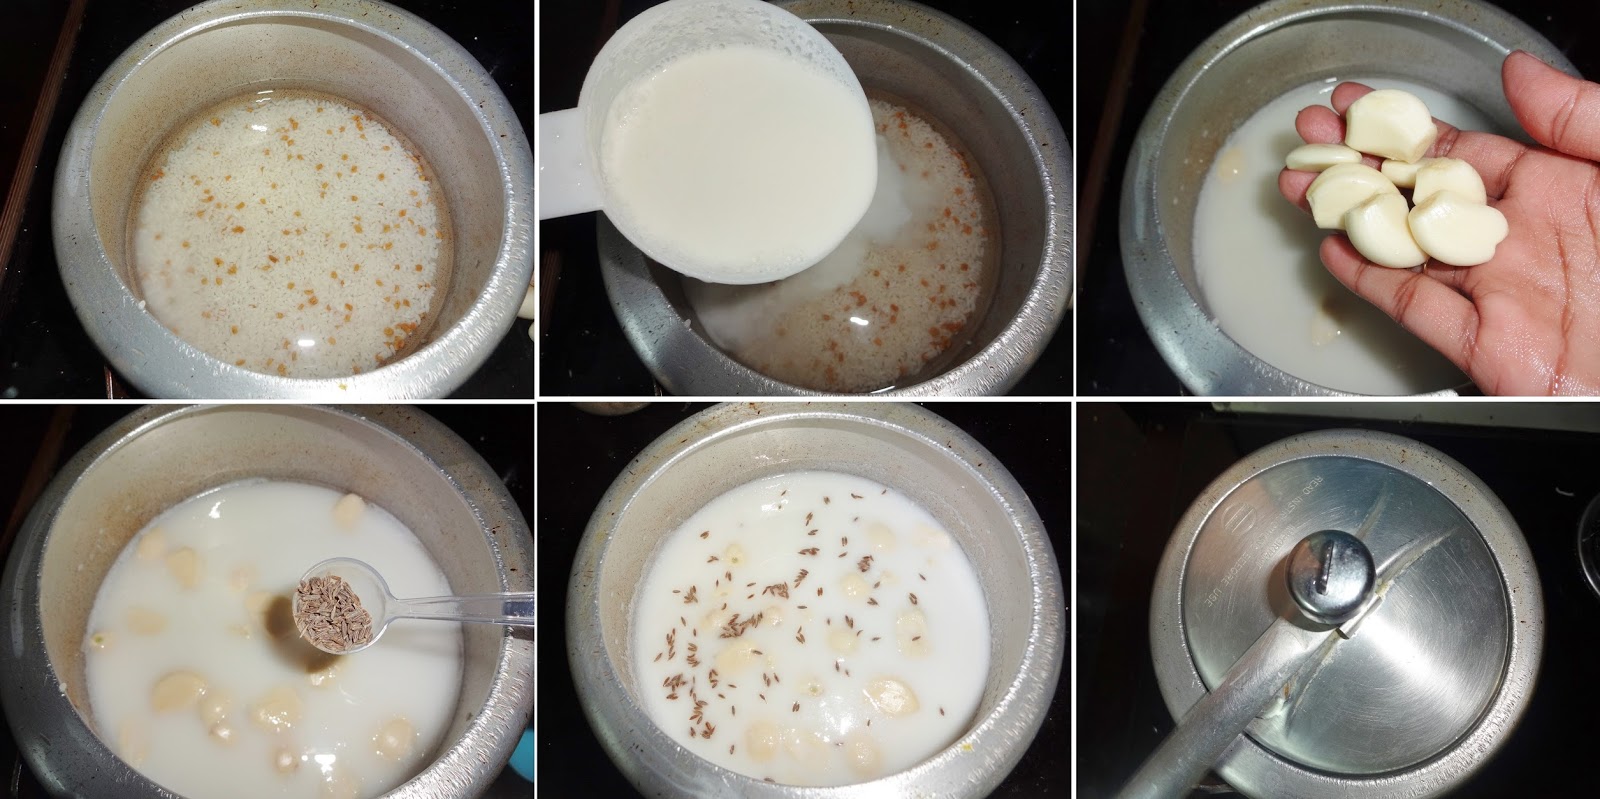 فوائد الحليب مع الثوم و وصفاته الصحيه  -وصفات-الحليب-مع-الثوم-مع-الوصفات7